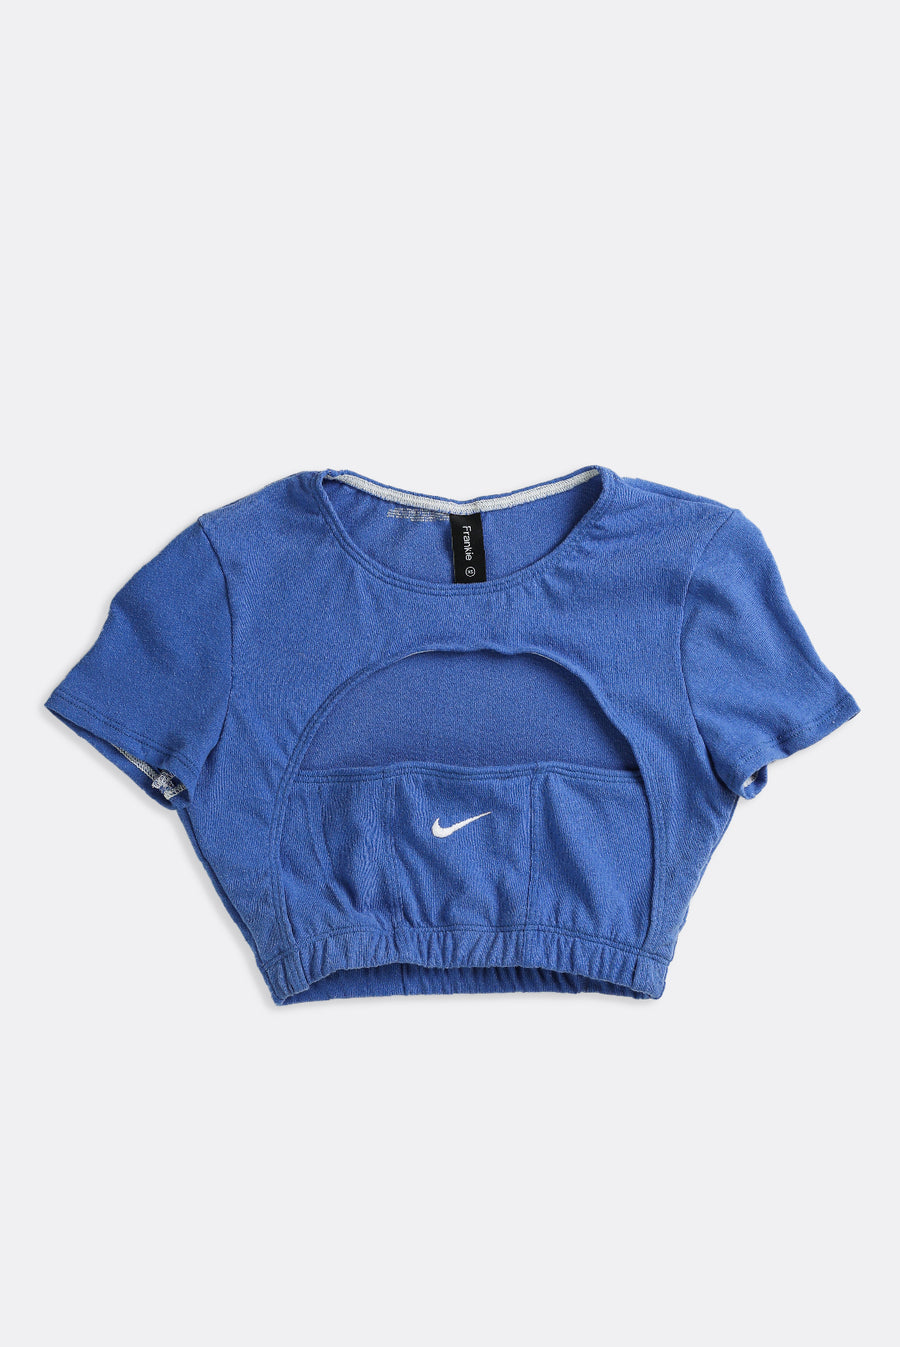 Rework Nike Sweatshirt Bustier - XL – Frankie Collective